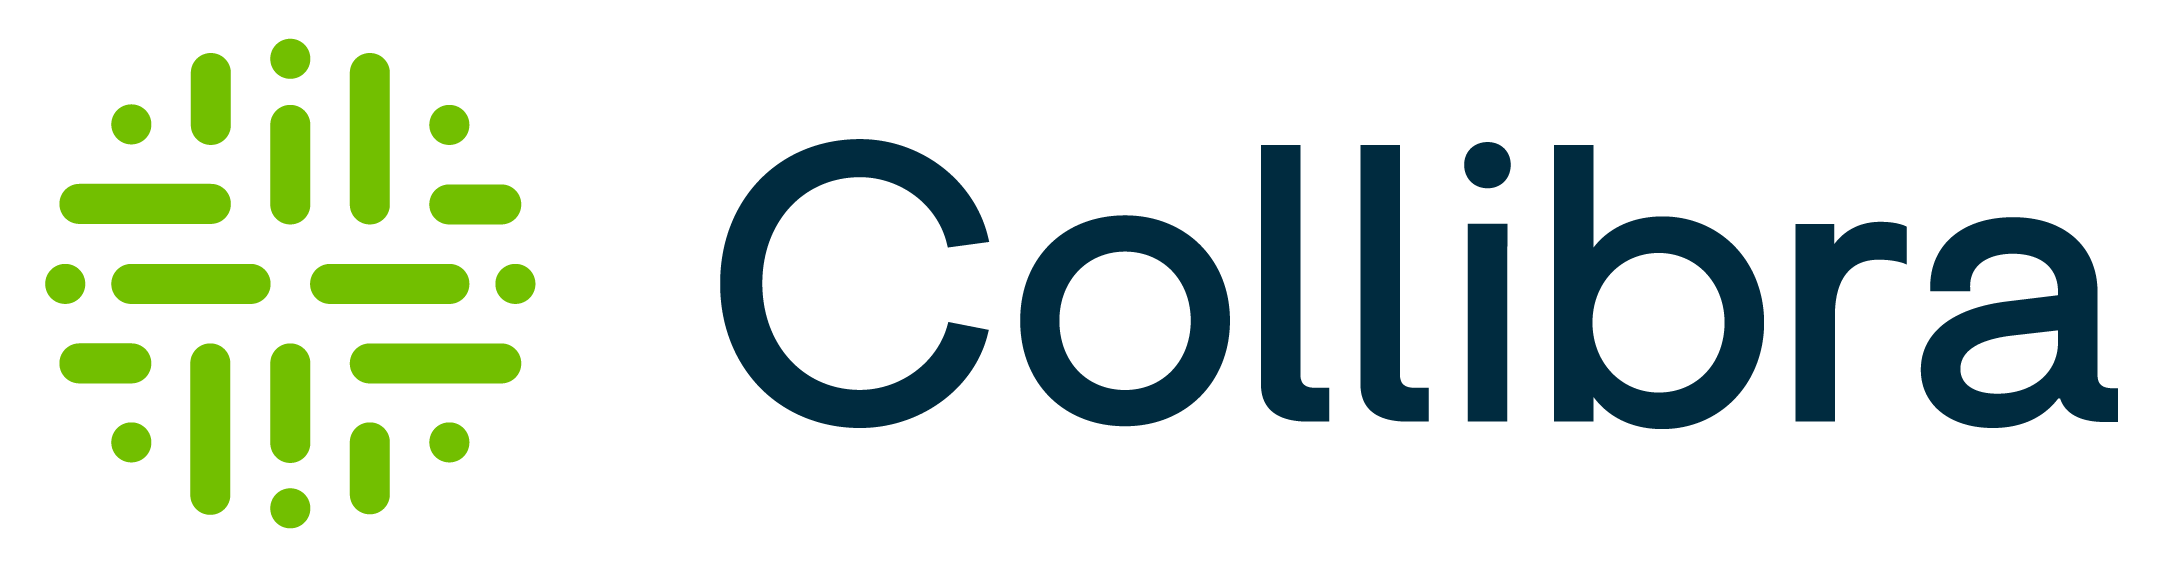 Collibra Logo for active job listings